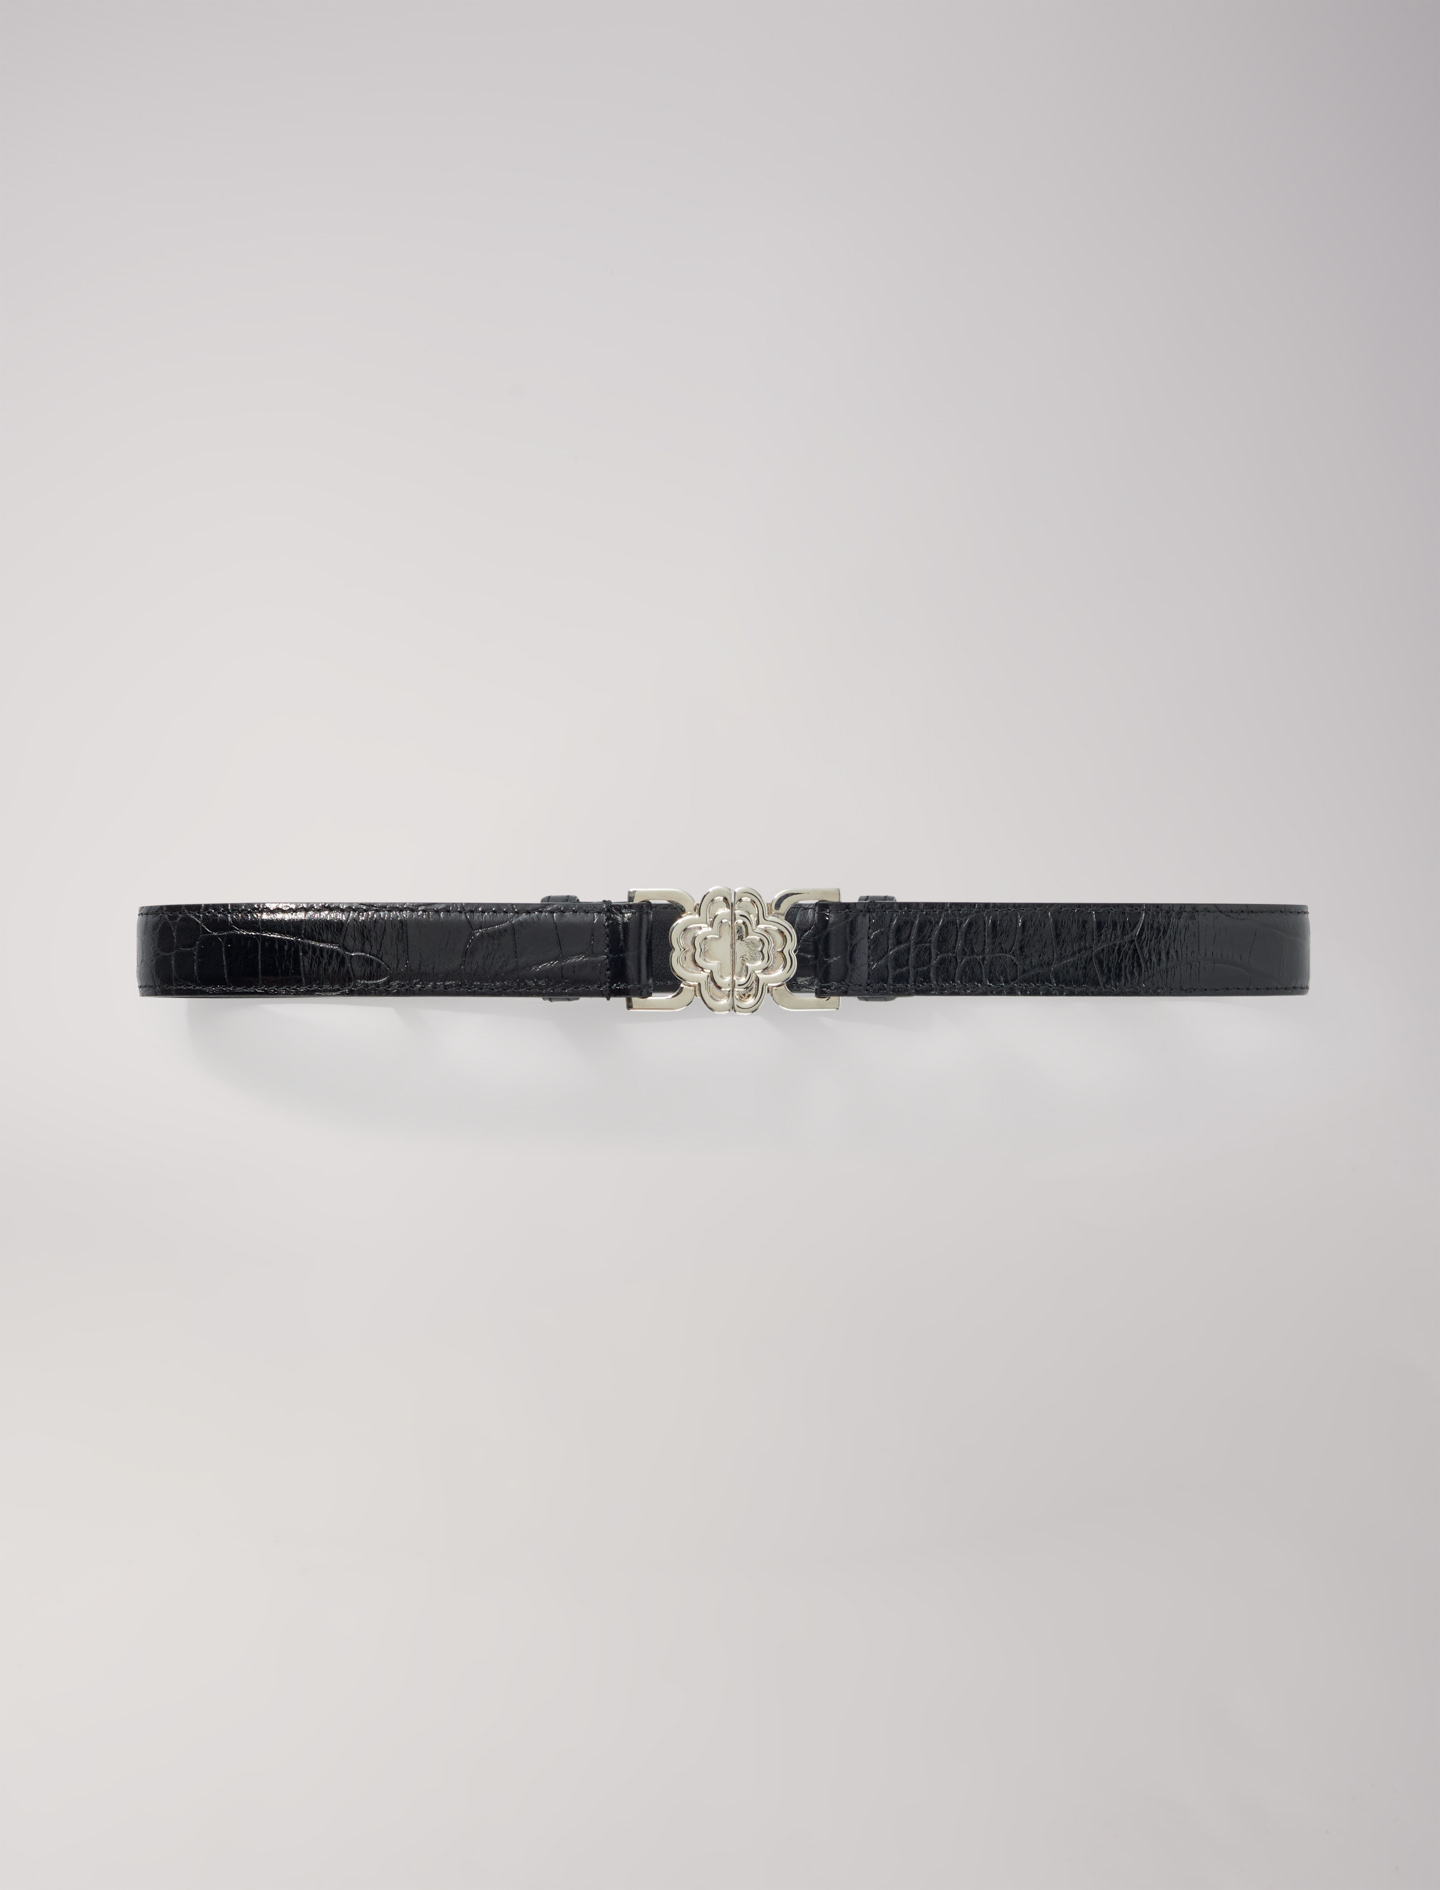 Mixte's polyester, Clover buckle belt for Spring/Summer, size Mixte-Belts-US L / FR 3, in color Black / Black